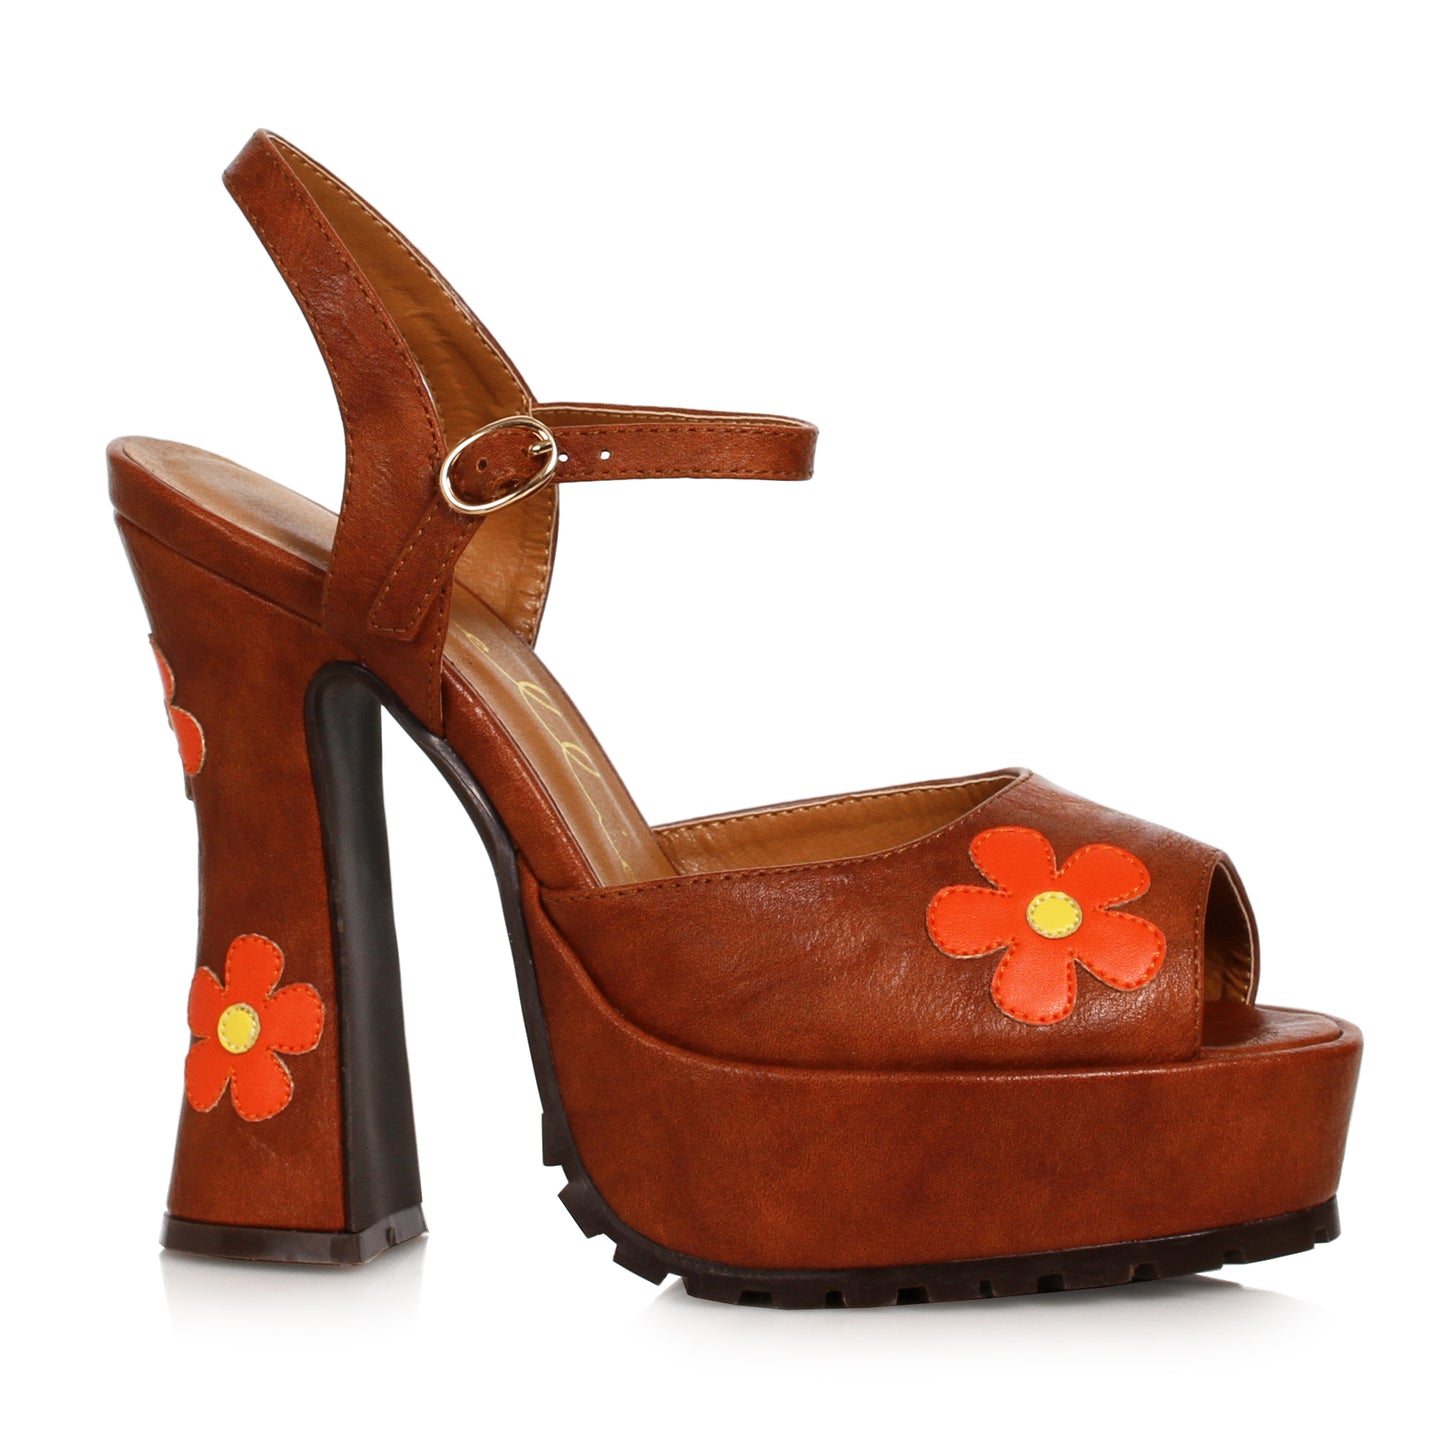 557-DAISY Ellie Shoes 5.5"Heel Open Toe Shoe with Flower FESTIVAL 5 INCH HEEL